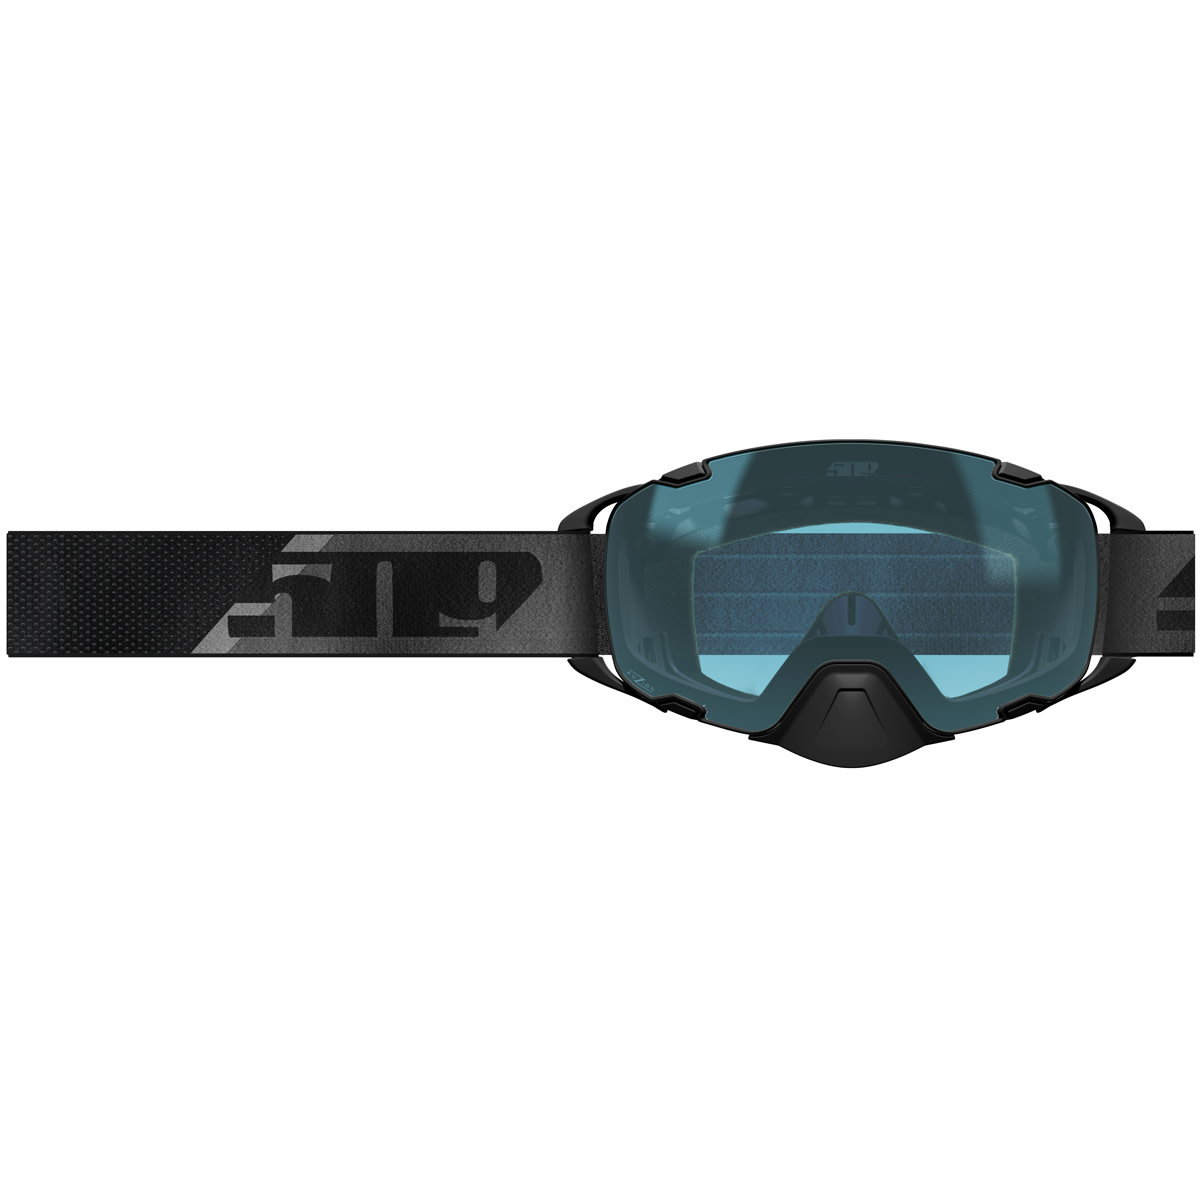 509 goggles adult aviator 2.0 fuzion goggles - snowmobile